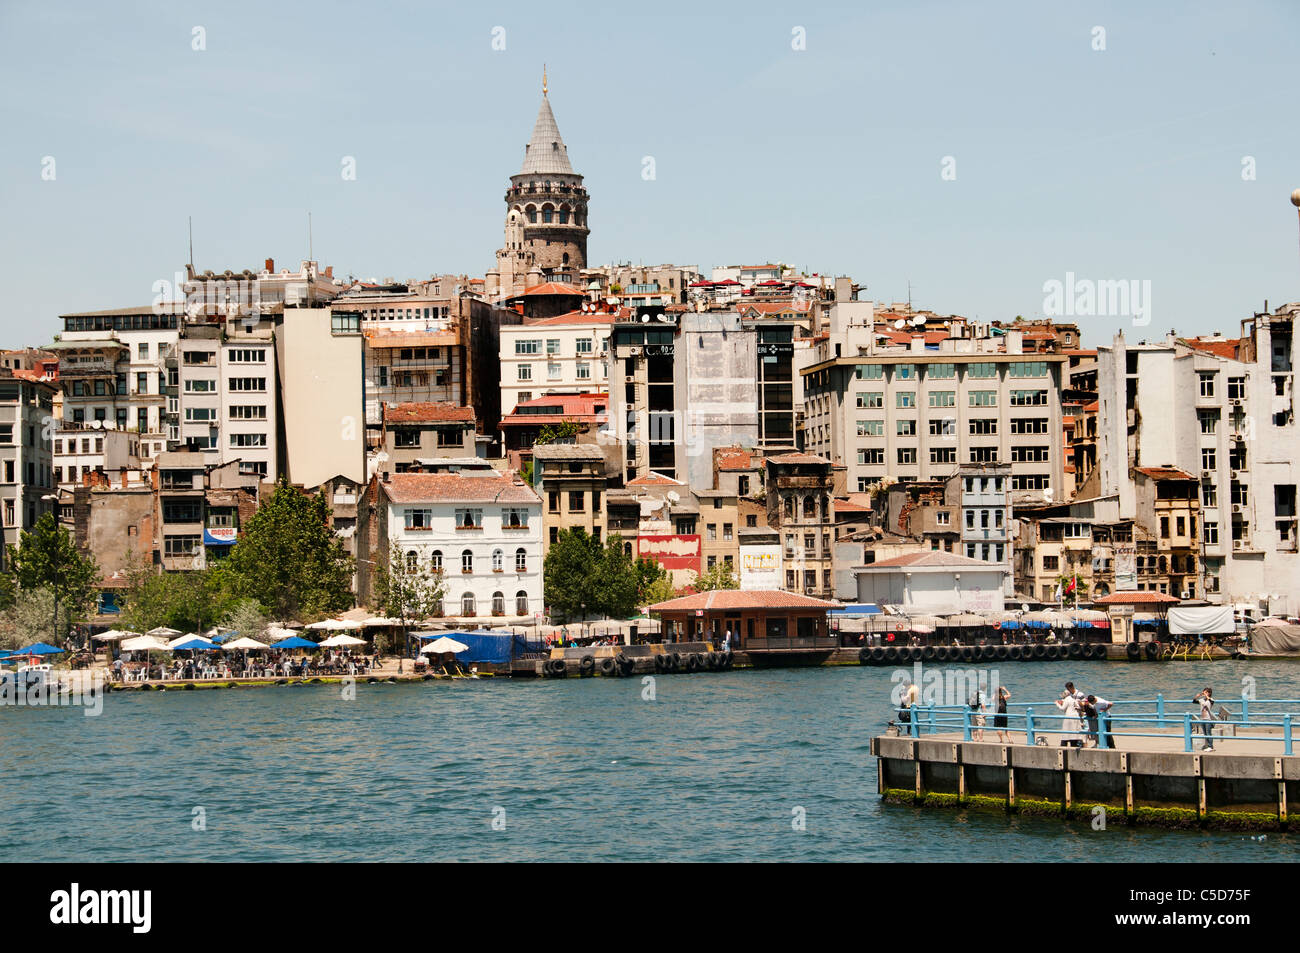 Der Galata-Turm-Beyoglu das Goldene Horn-Istanbul-Türkei Stockfoto